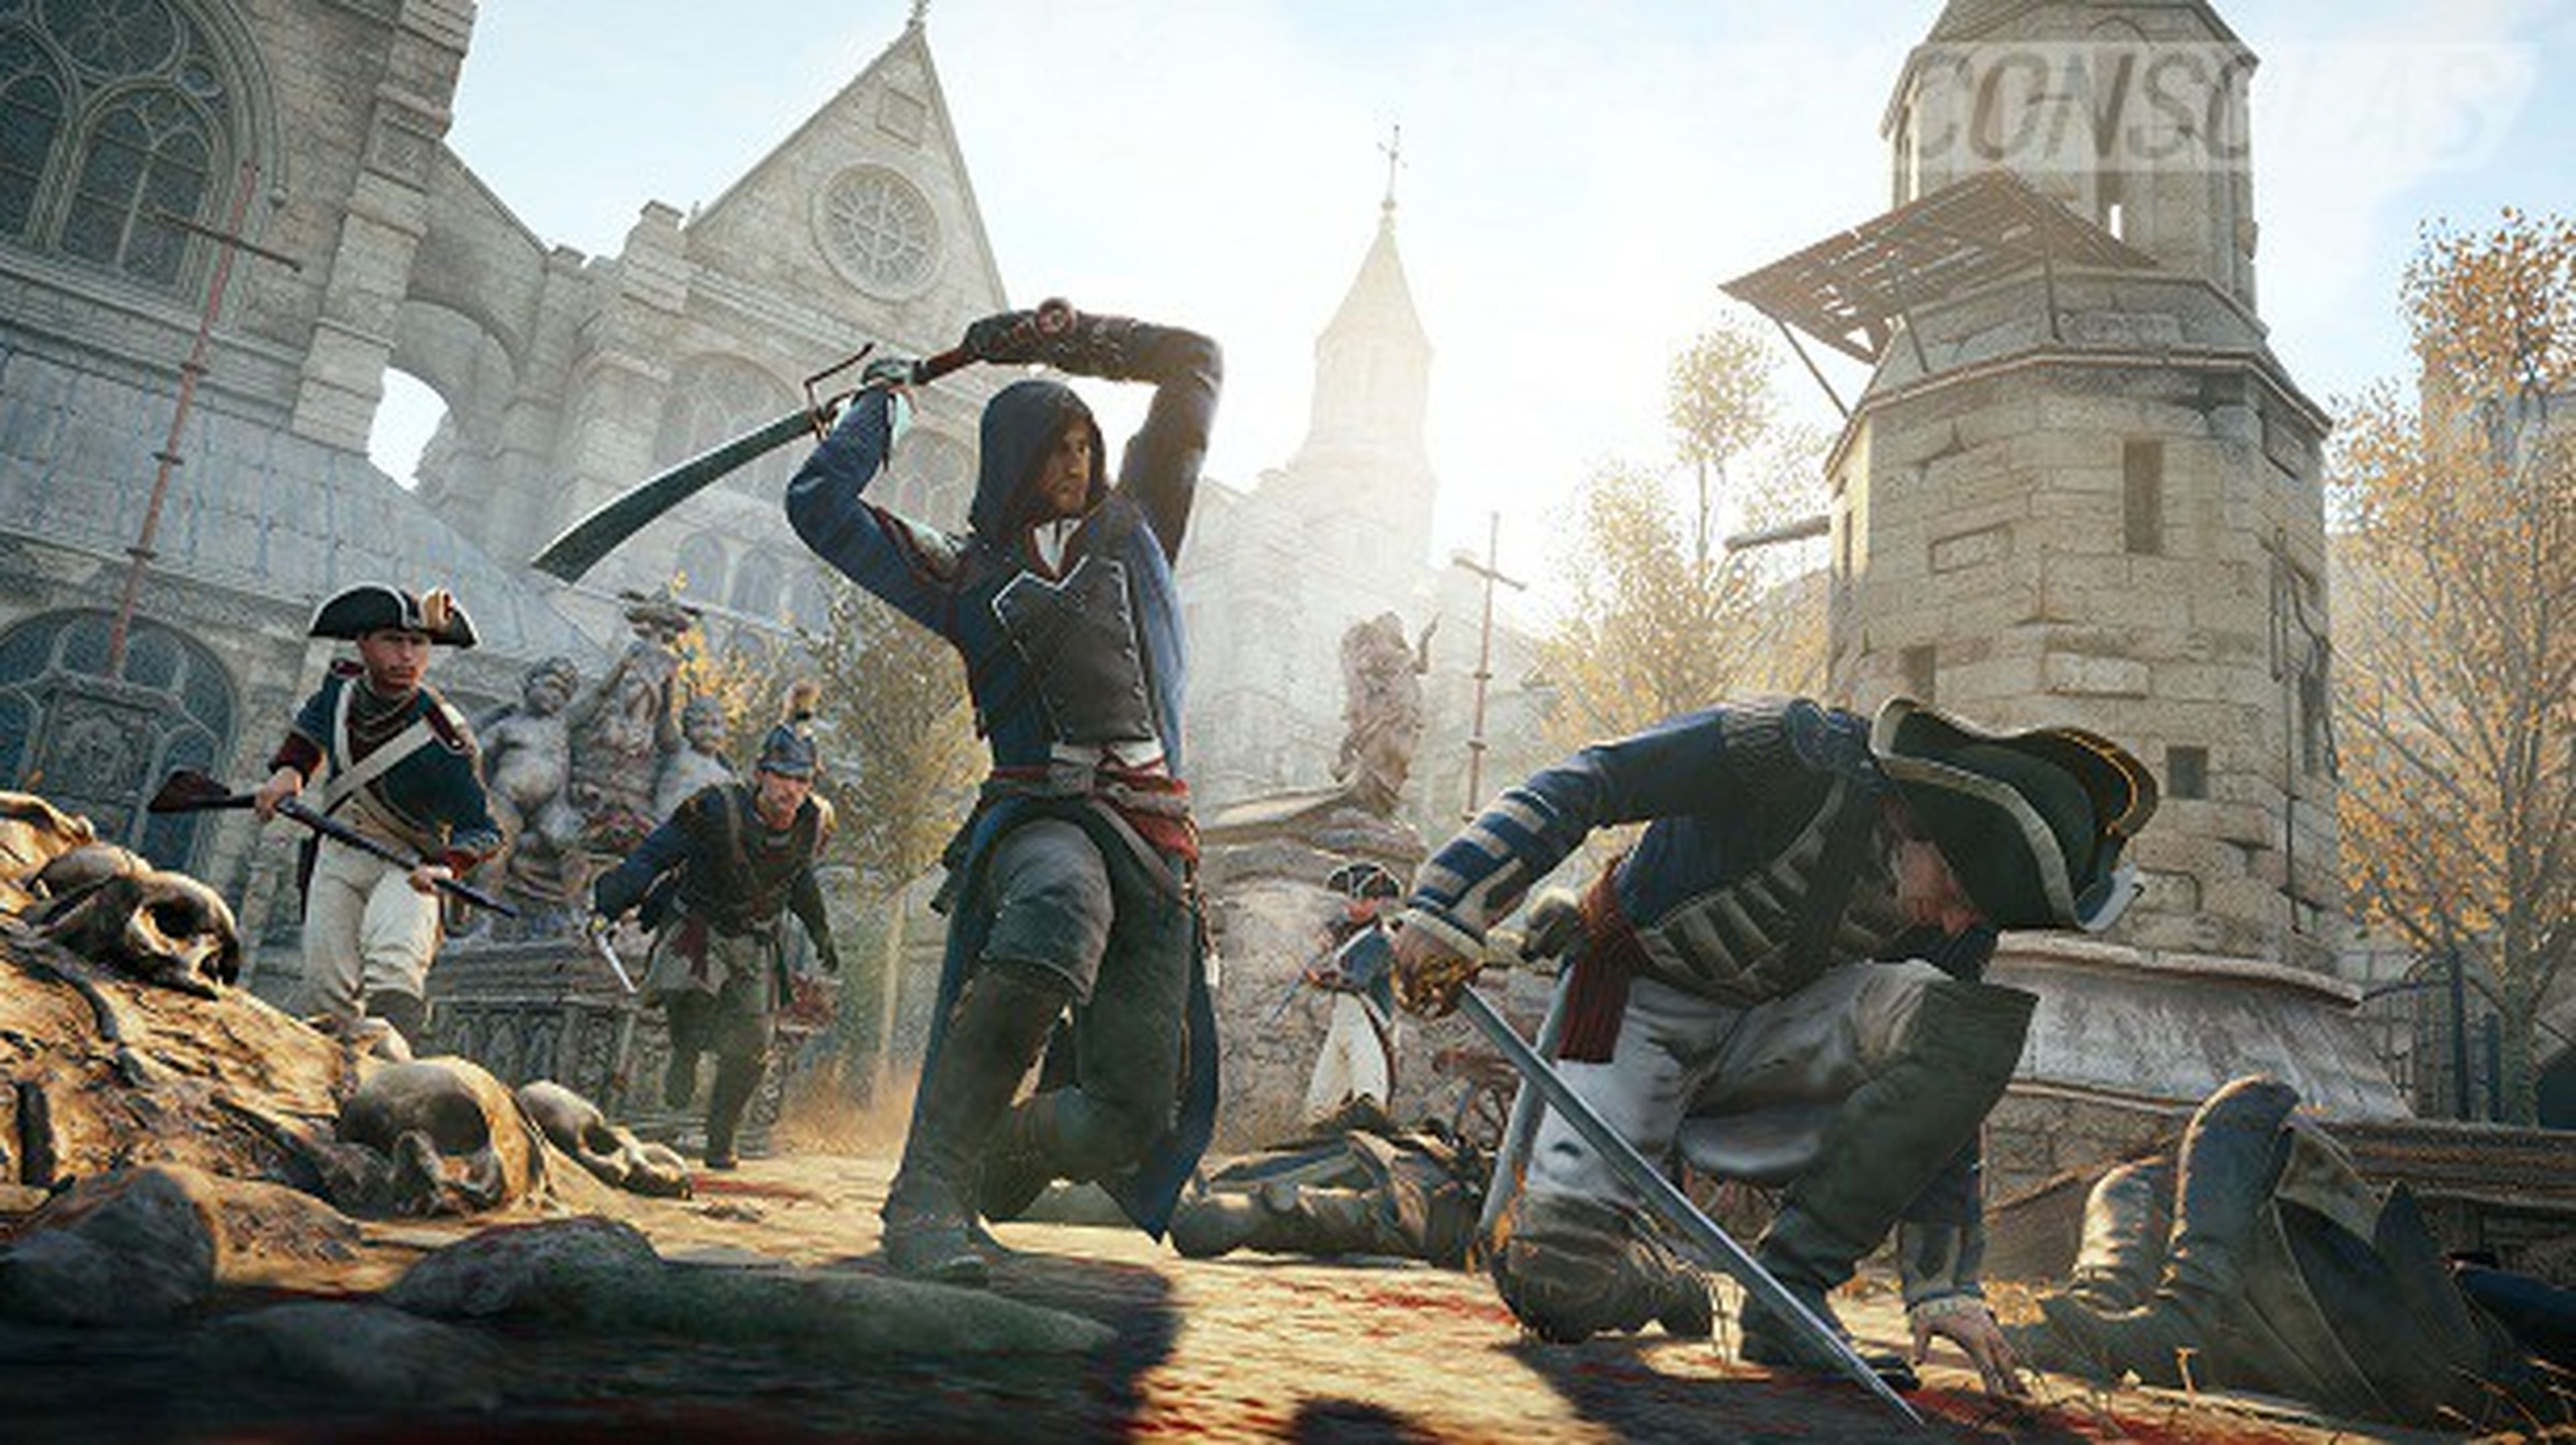 El juego gratis de Ubisoft por Assassin's Creed Unity tiene truco